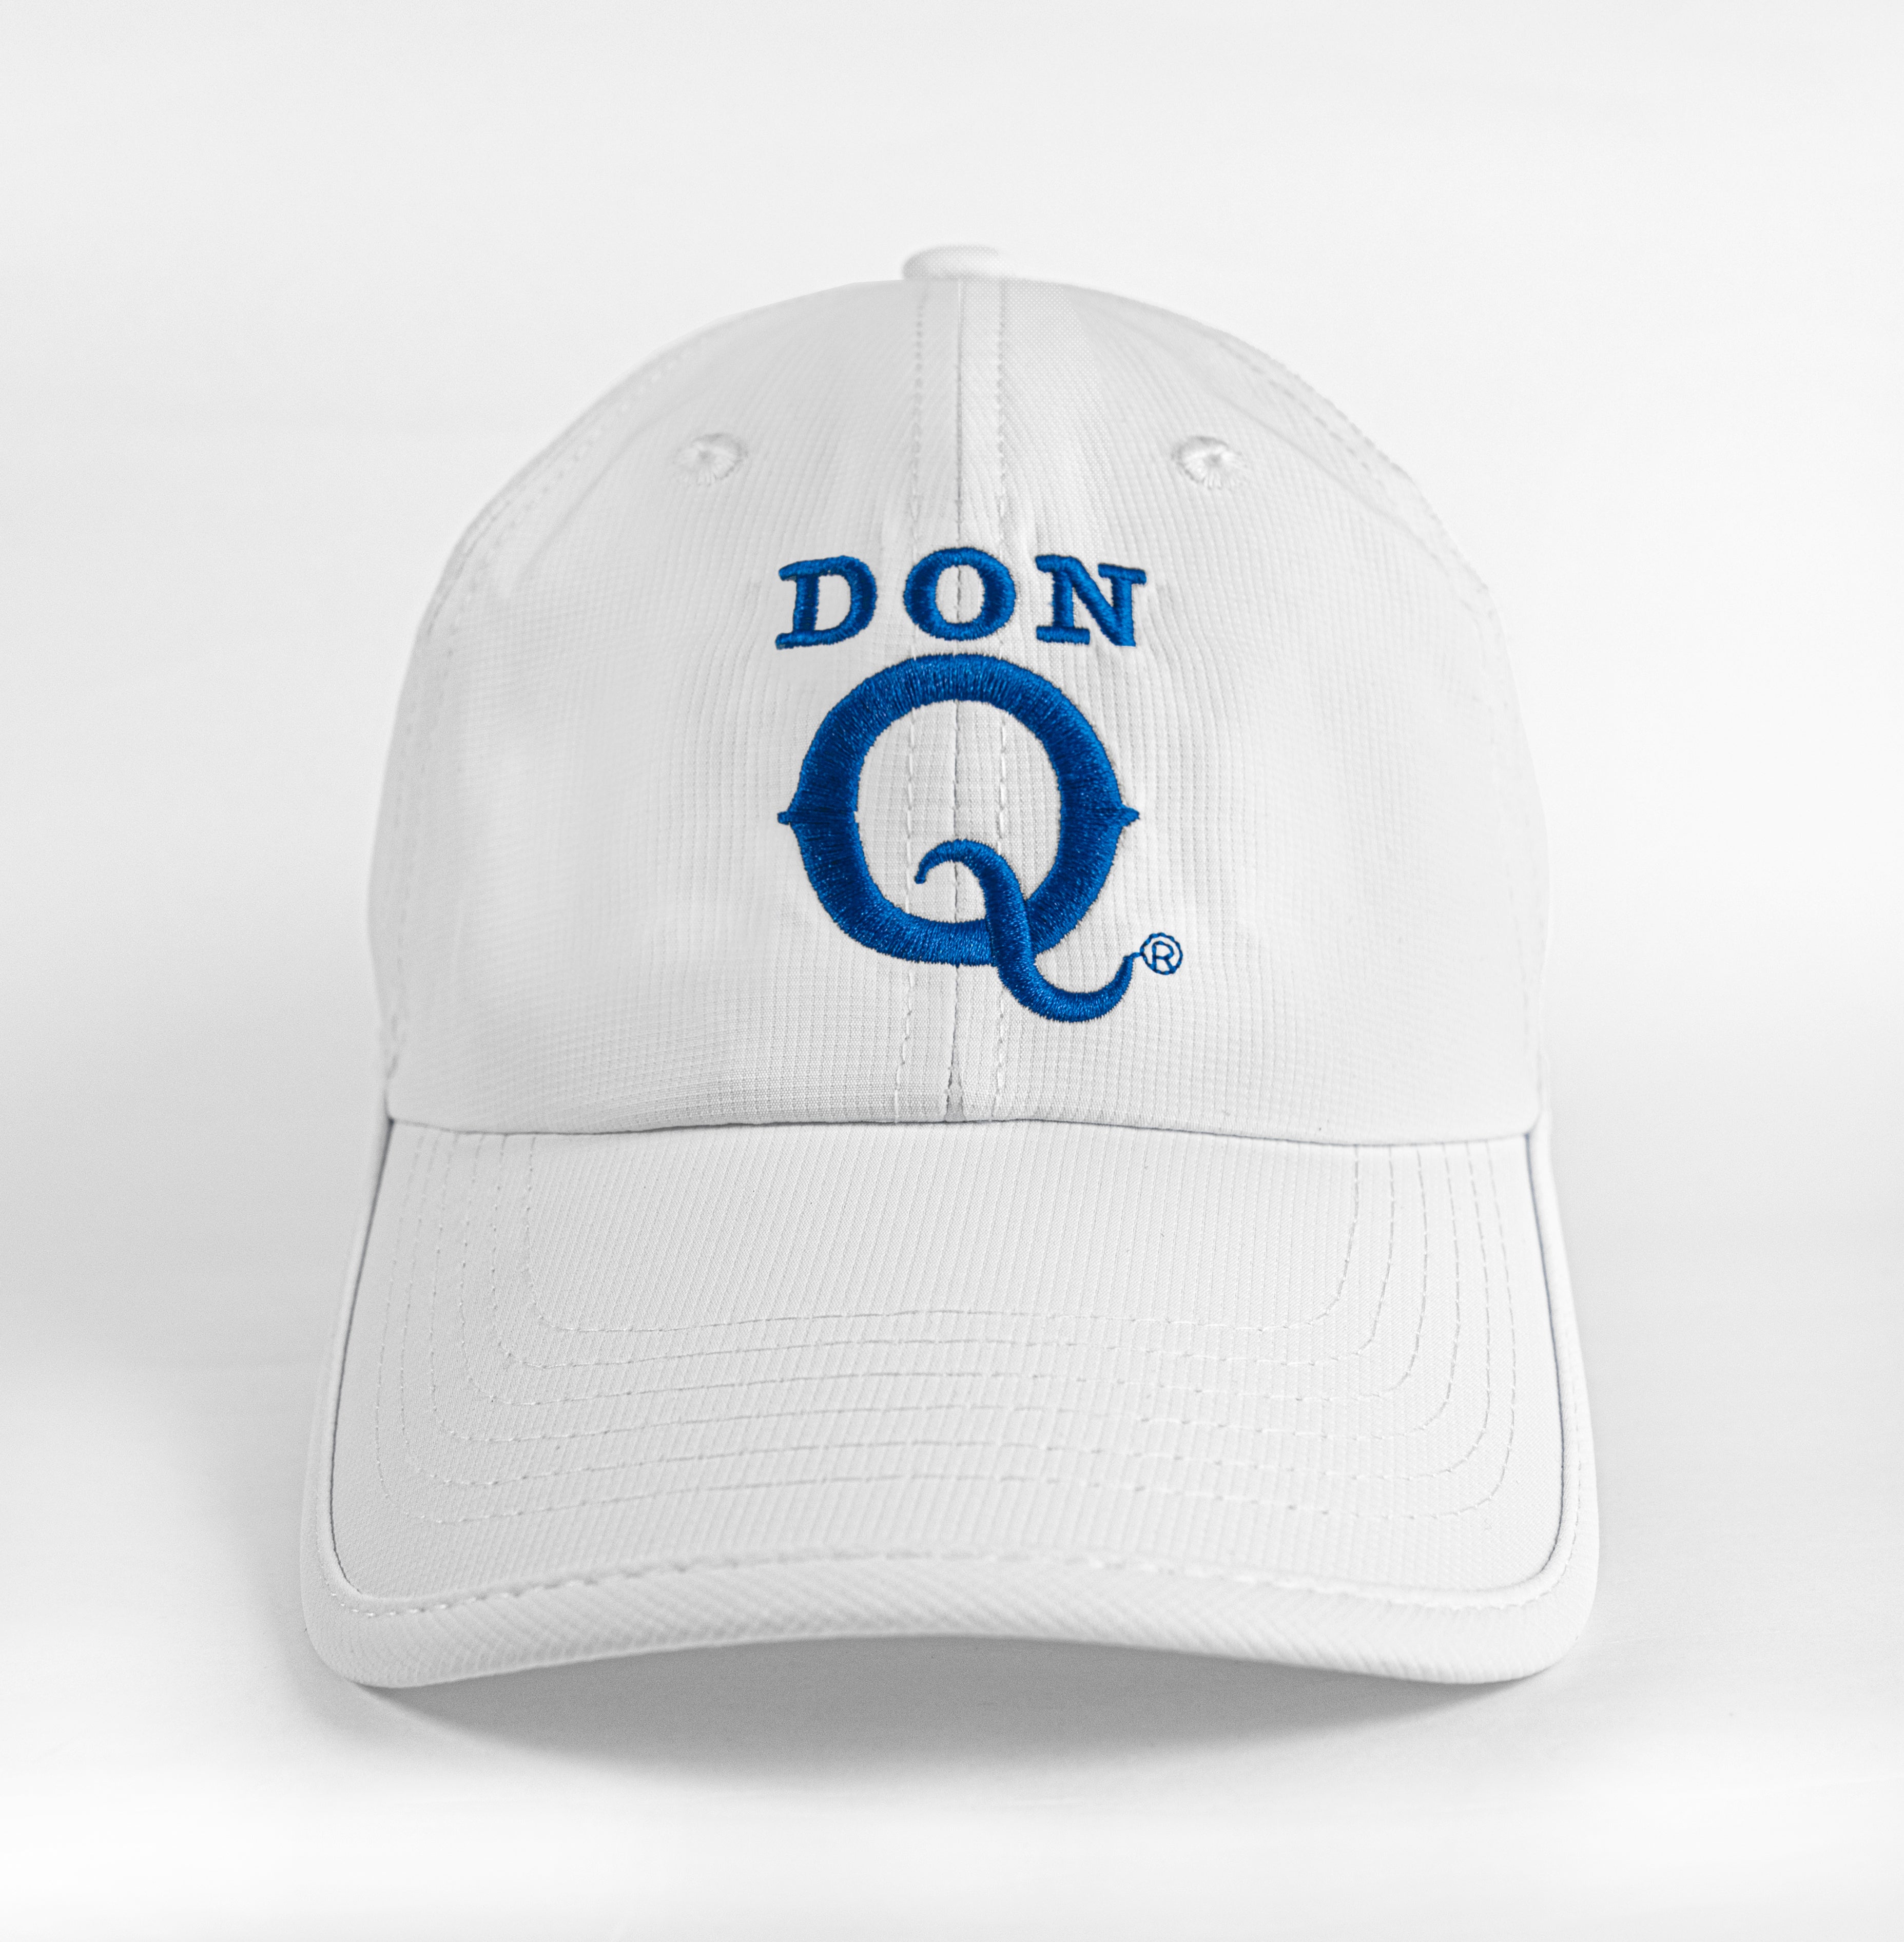 Don Q Golf Cap White